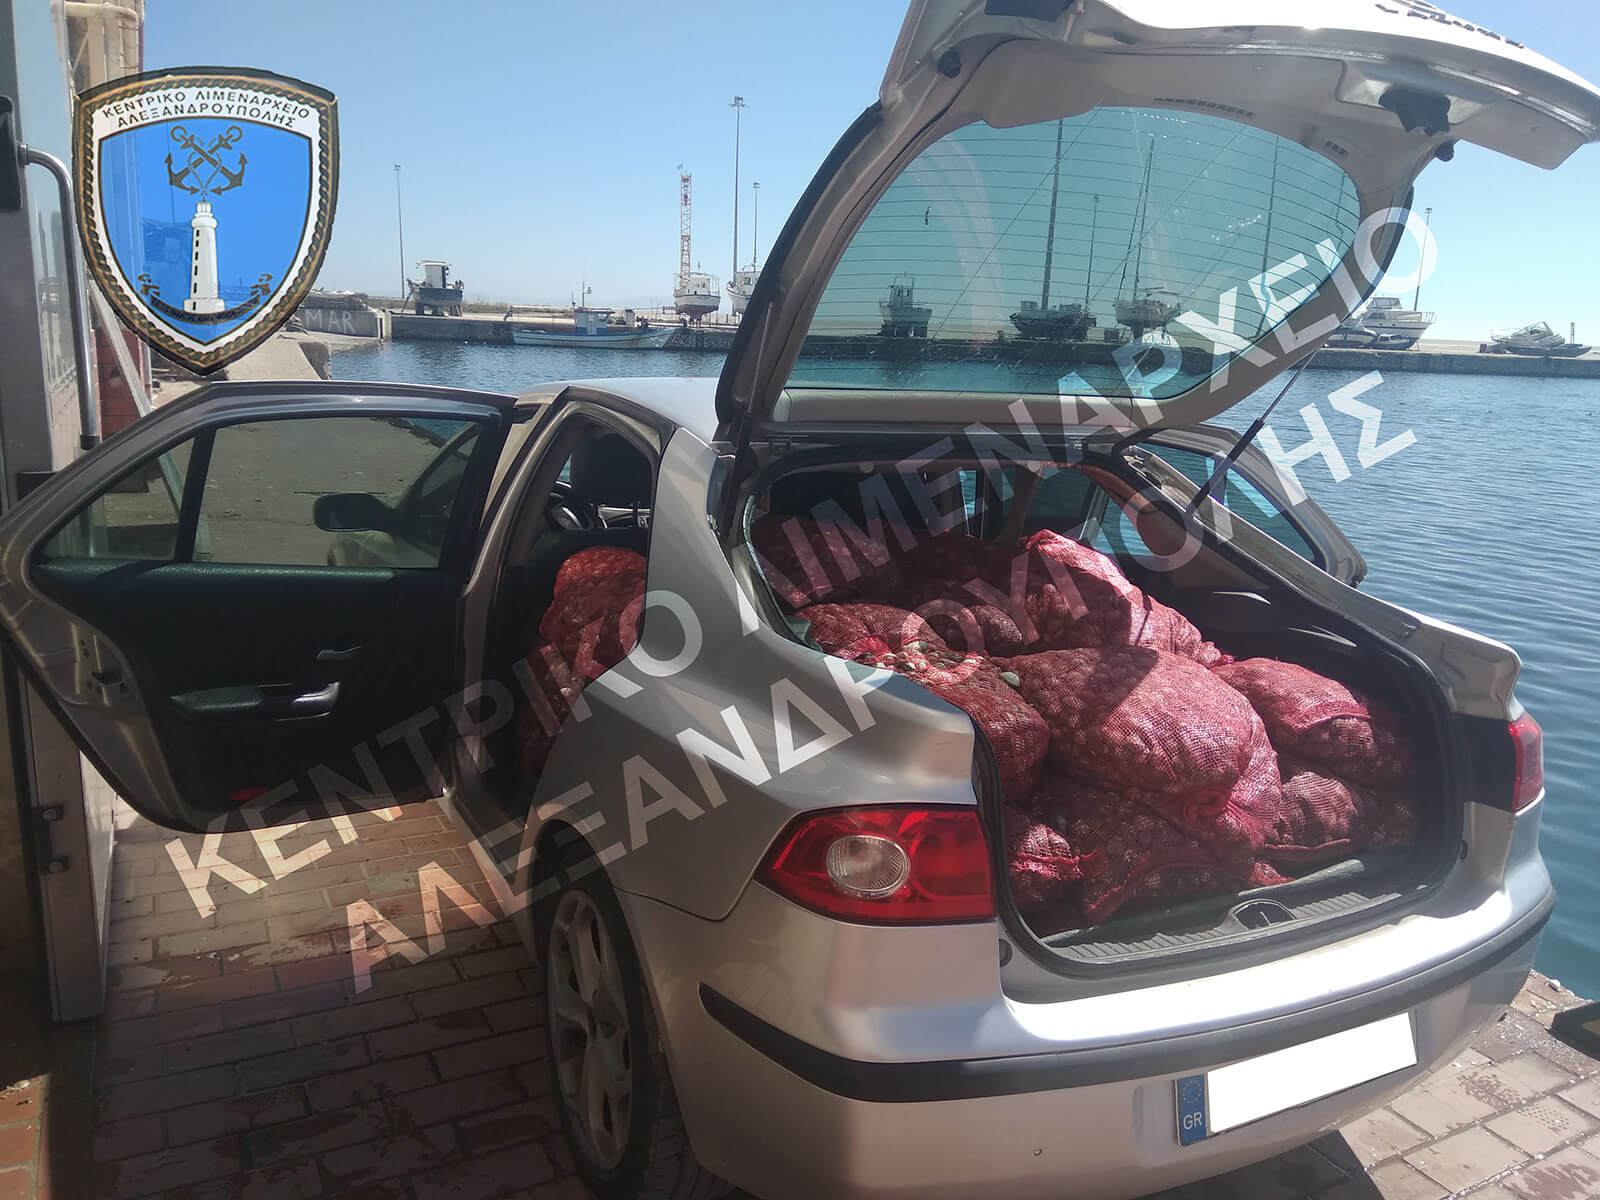 Αλεξανδρούπολη: Μέσα στο αυτοκίνητο αυτές οι εικόνες – Θα πουλούσαν στην αγορά ακατάλληλα όστρακα [pics]